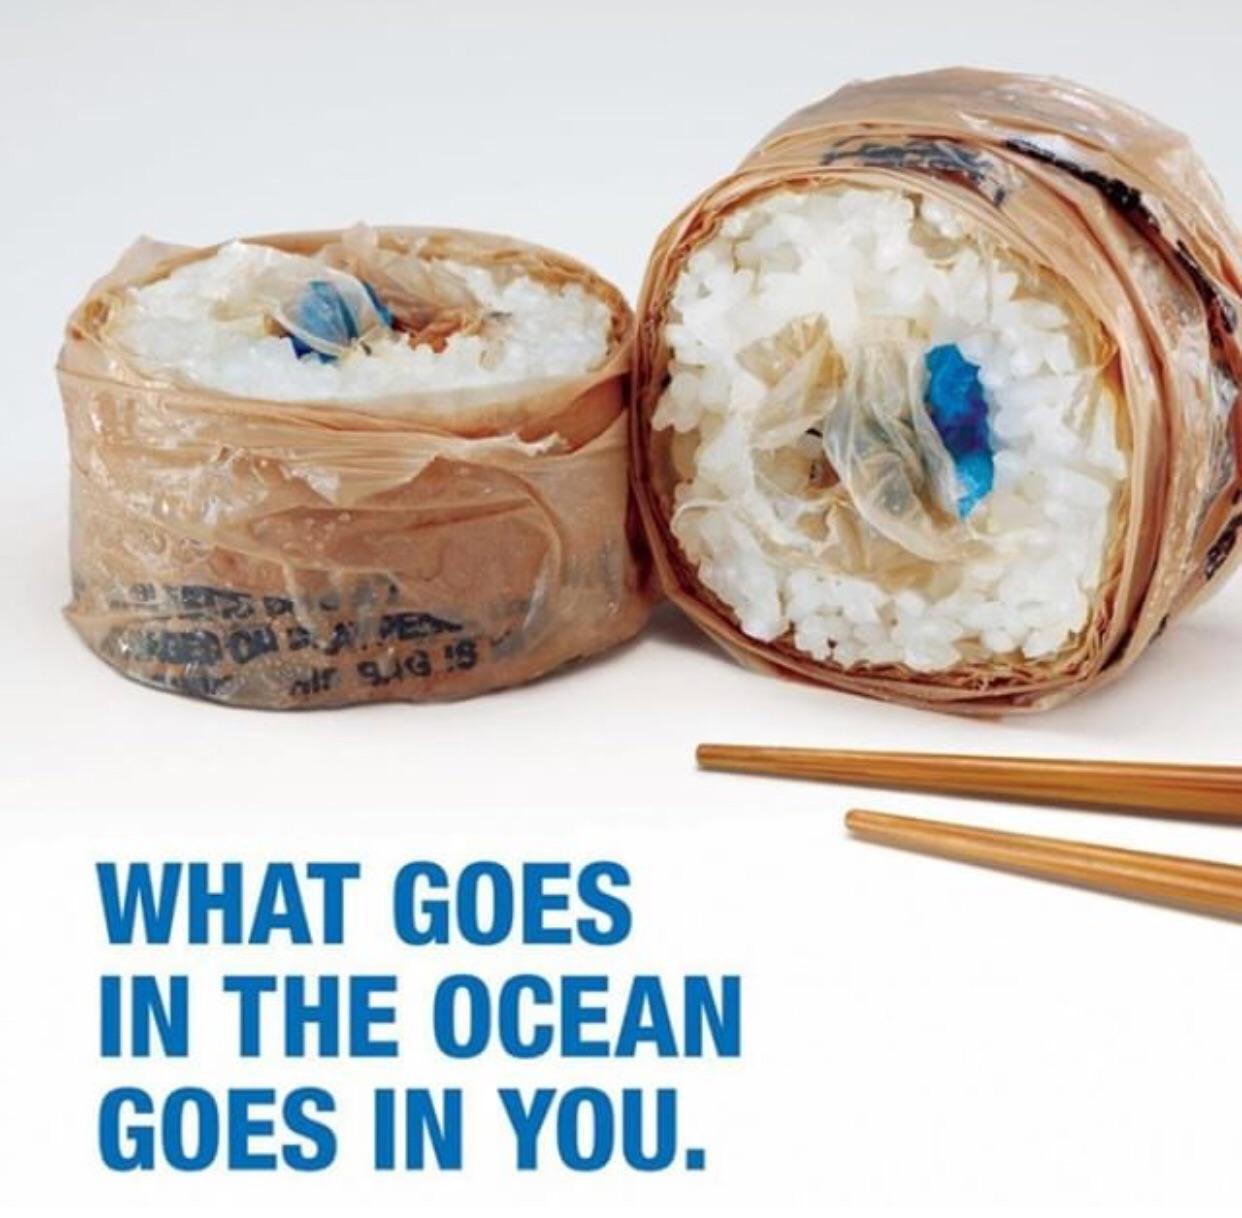 環境団体がユニークな「寿司の広告」…海洋汚染の実態を伝えるため